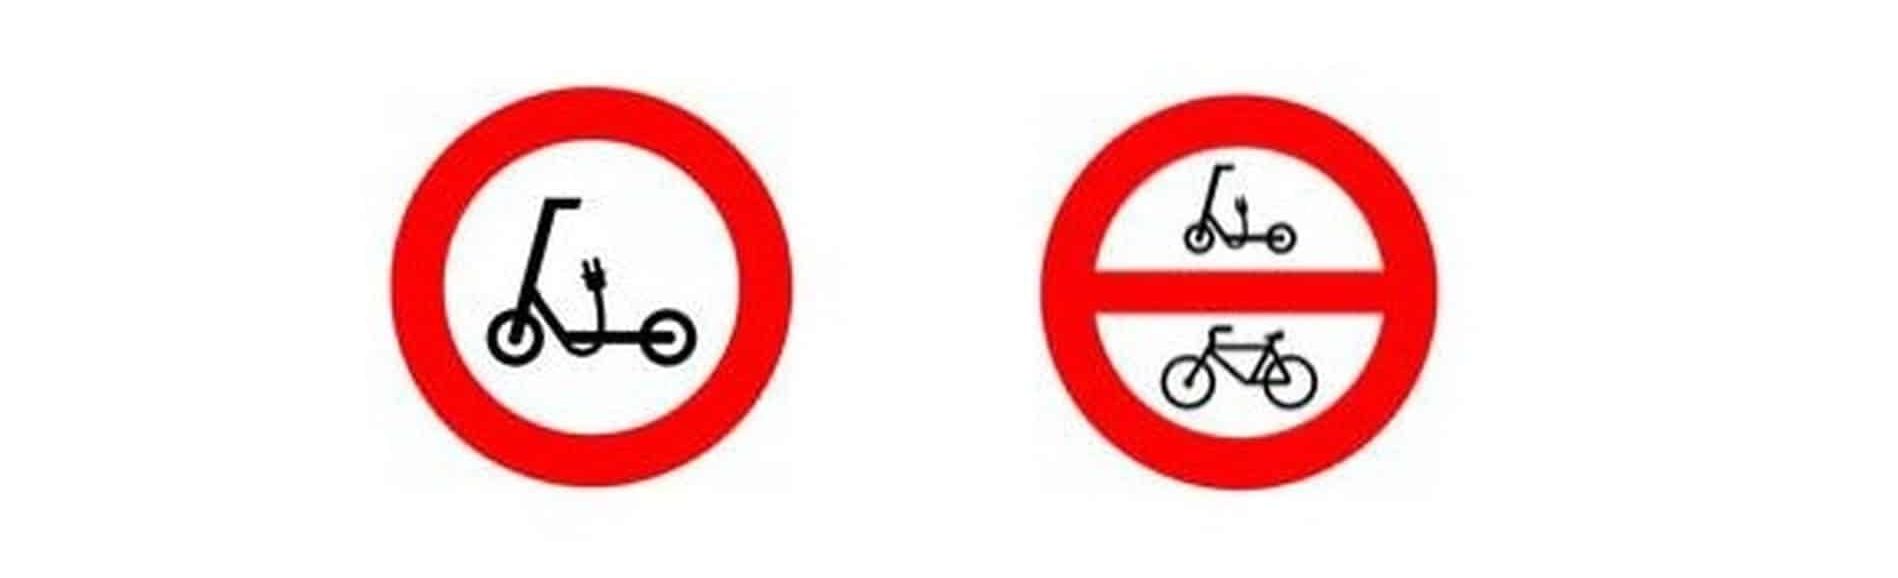 Hiszpania: elektryczna hulajnoga - znaki drogowe zakazu ruchu 